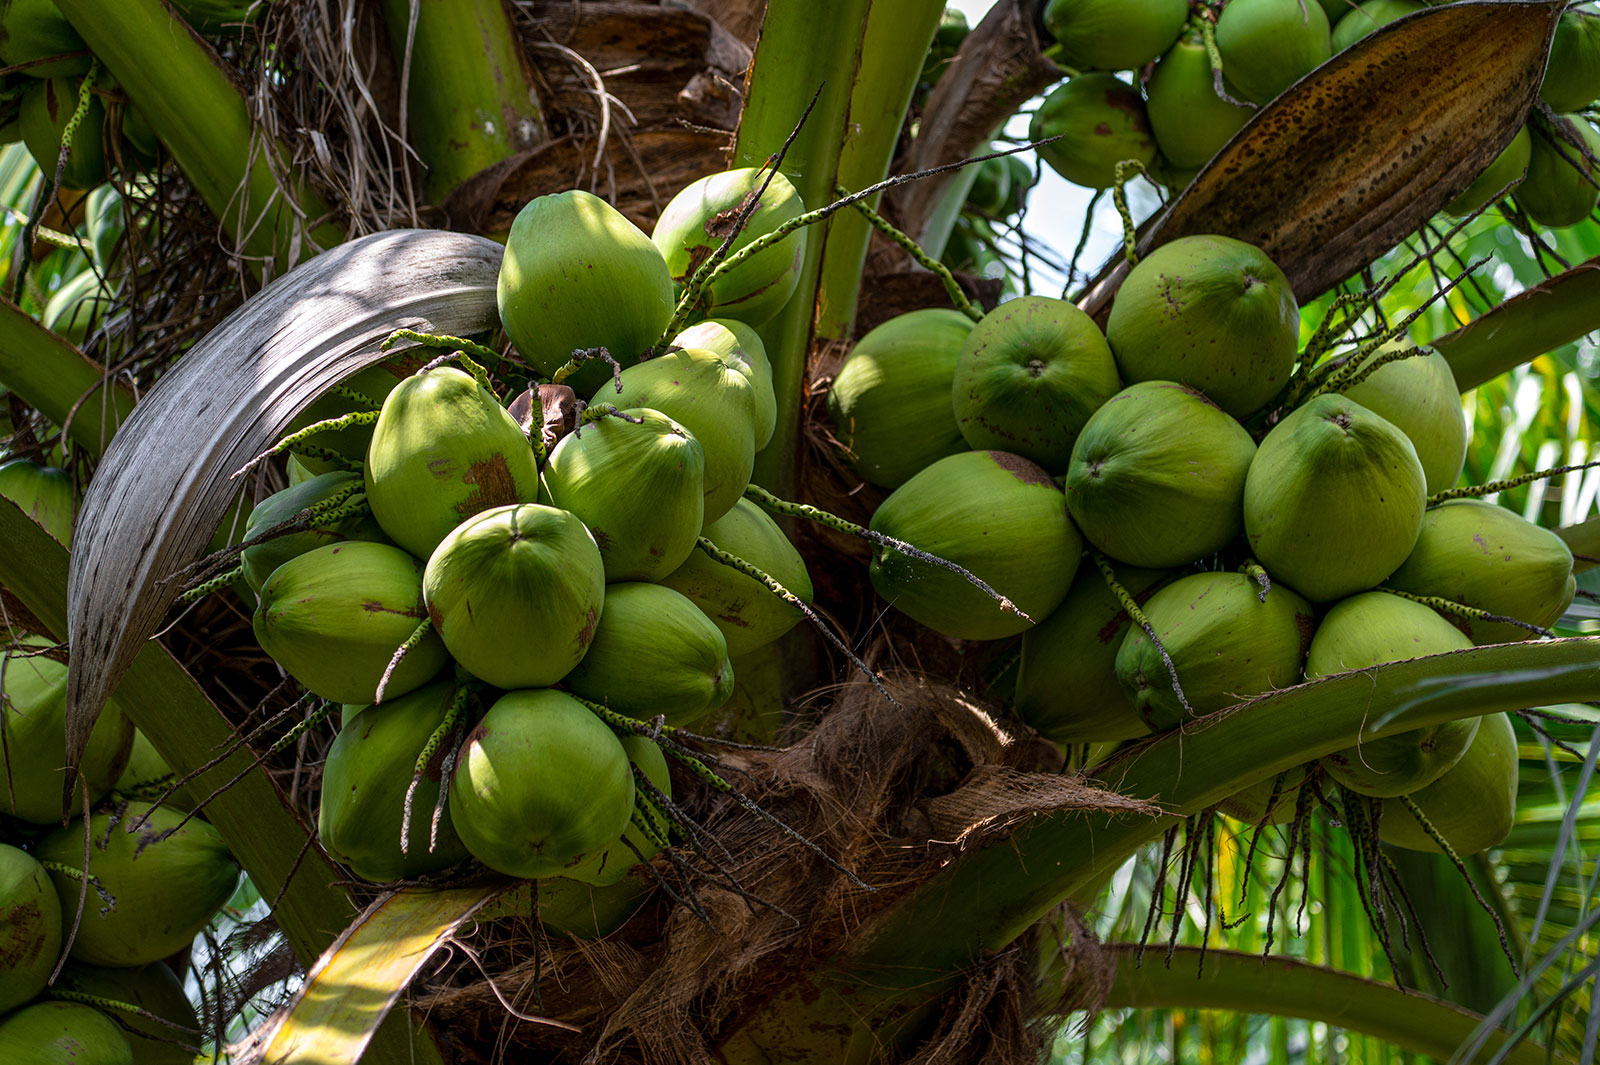 Nam hom coconuts. Copyright: GIZ